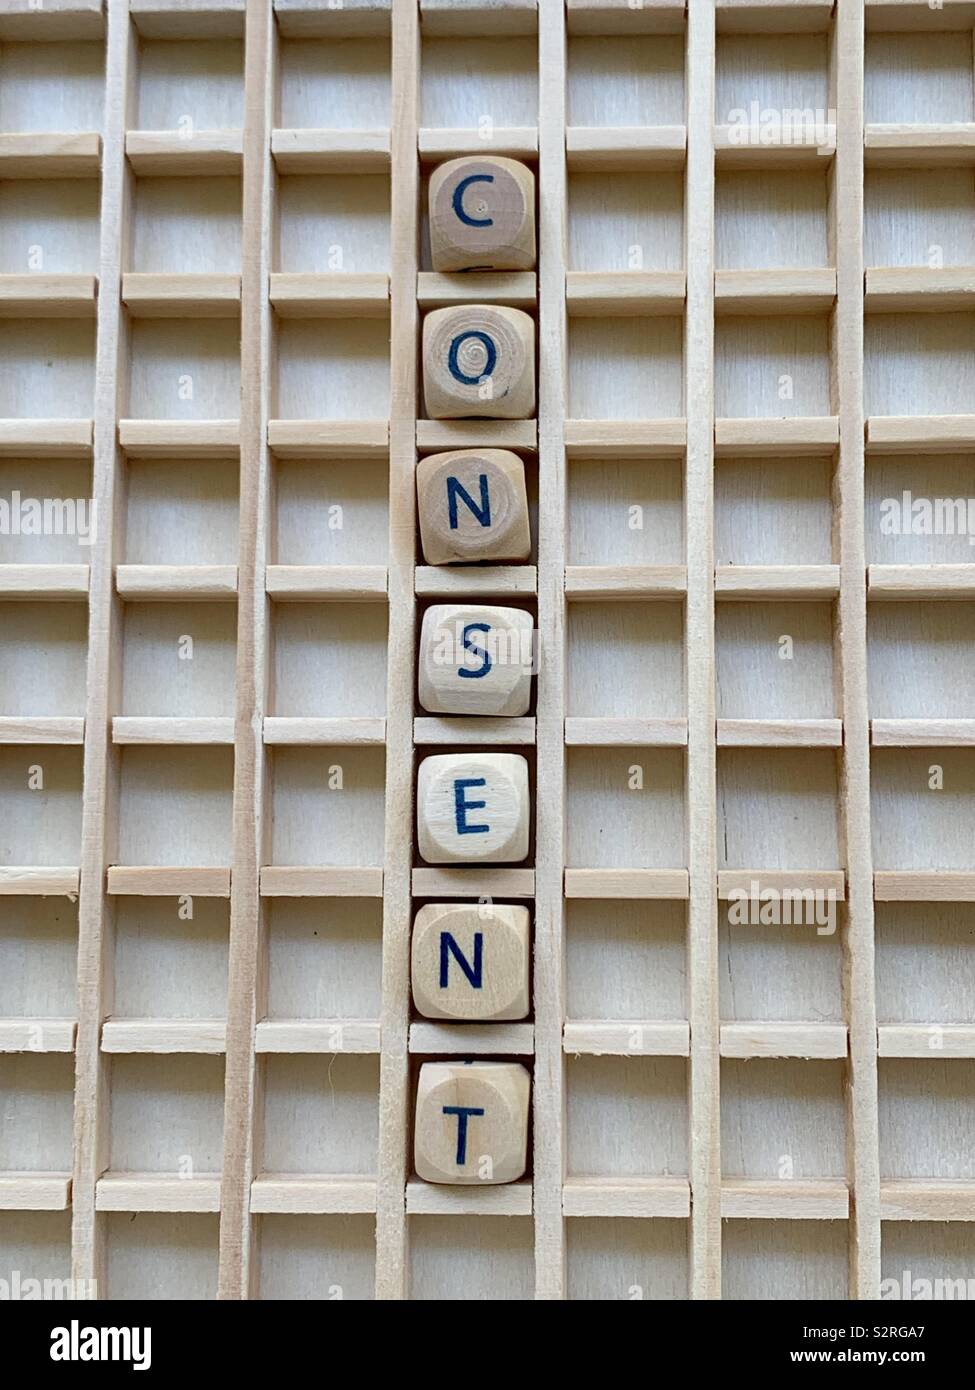 Consentimiento palabra compuesta con cubo de madera dados cartas Foto de stock